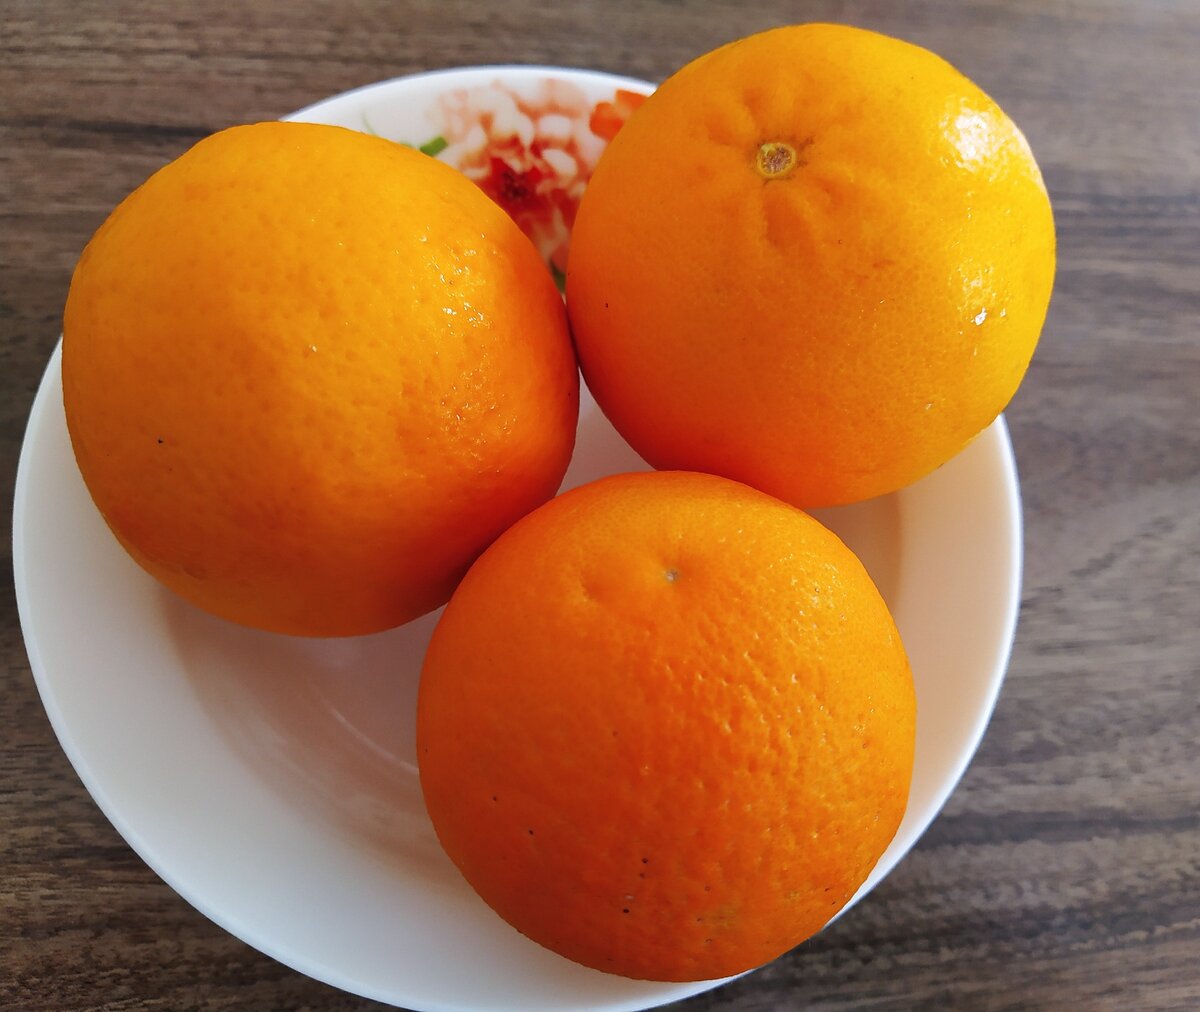 Чем полезен апельсин – польза и вред для здоровья мужчин, женщин и детей